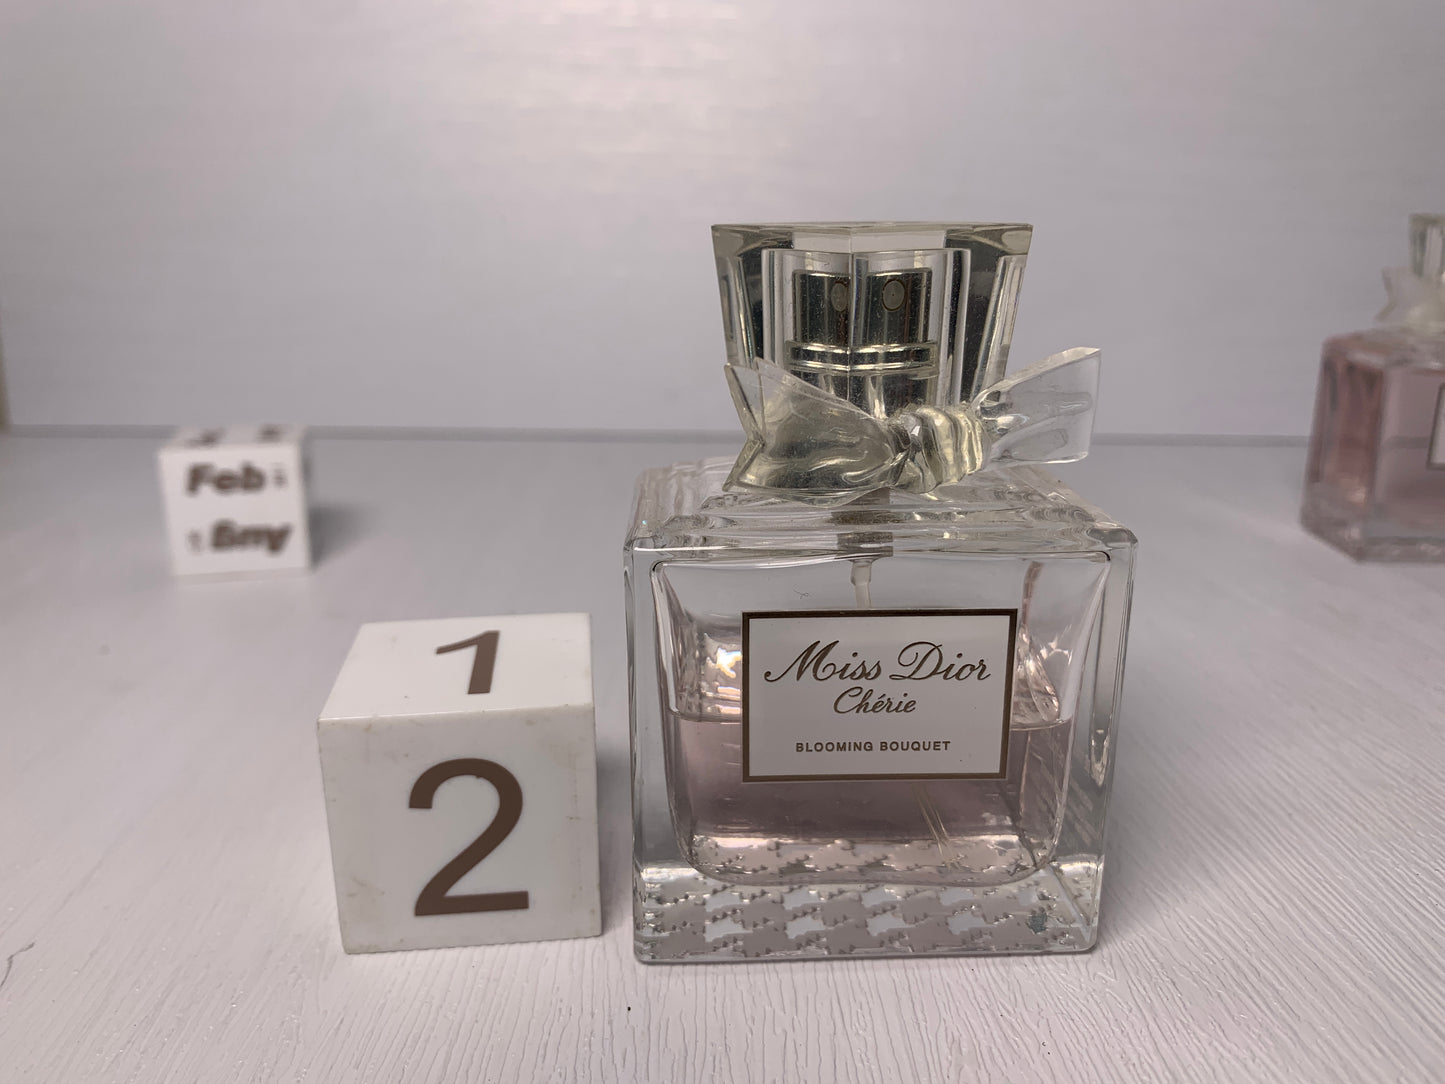 Rare Miss Dior Cherie   50ml 1.7 oz EDT eau de toilette  Parfum Perfume - 6FEB22